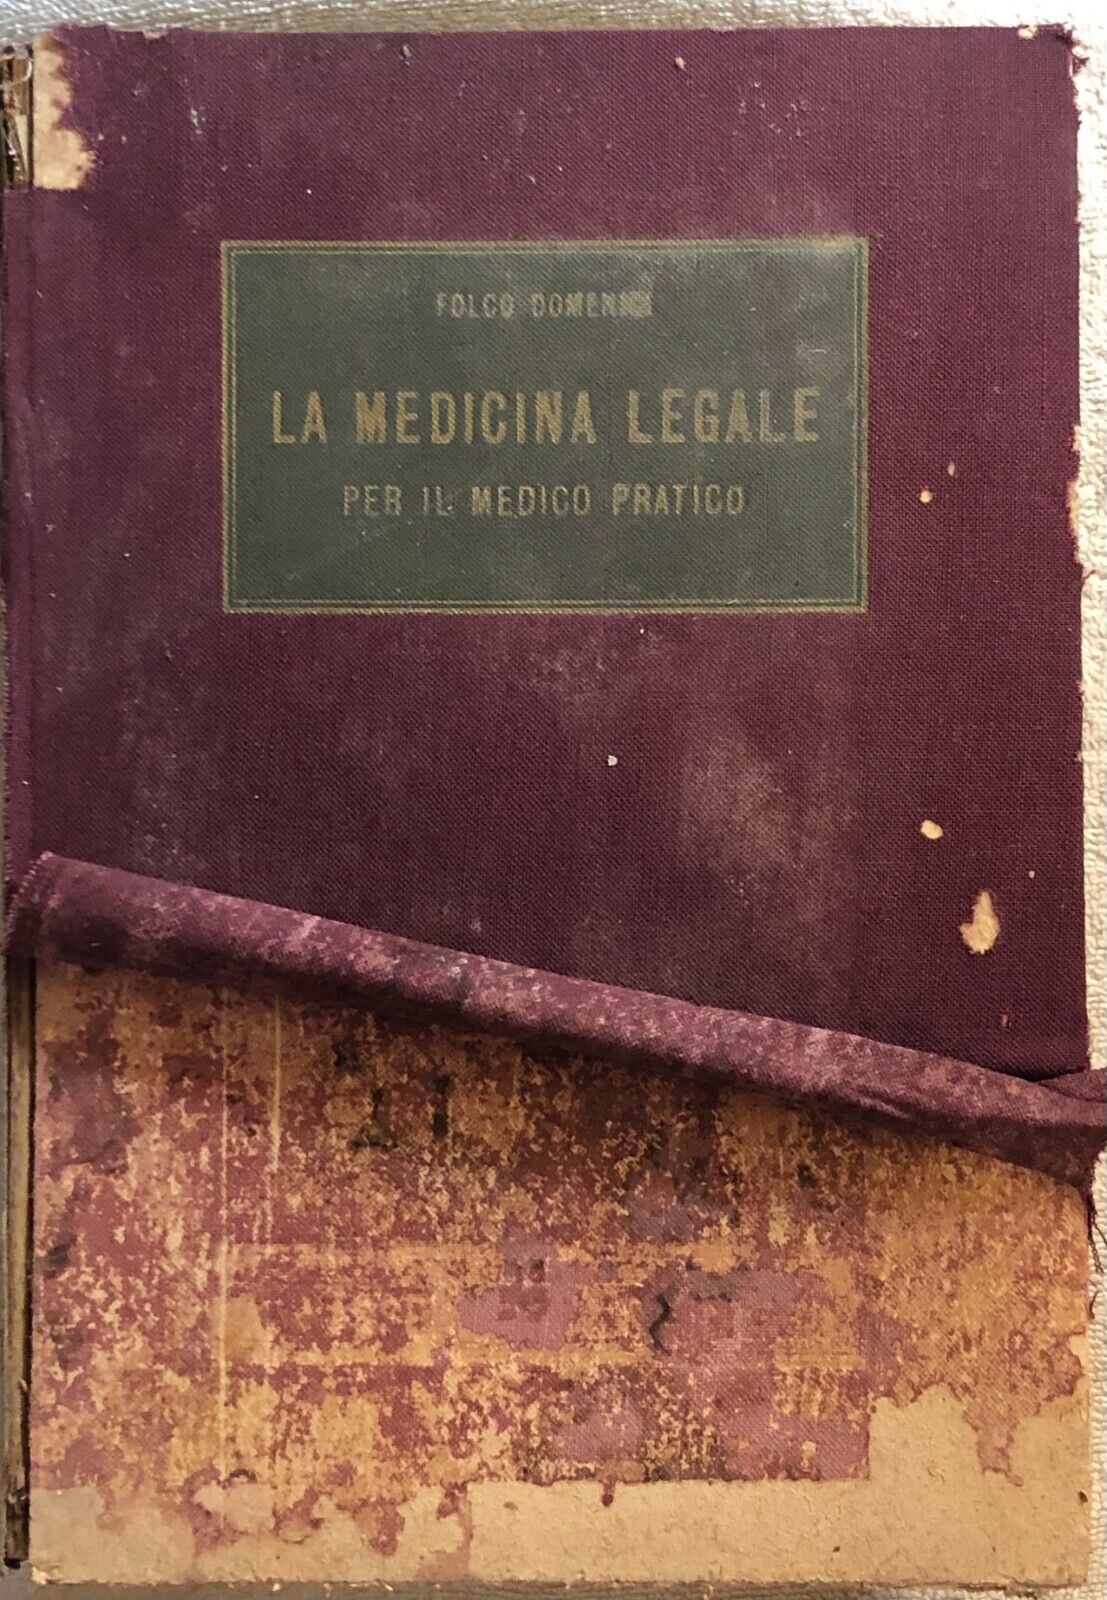 La medicina legale per il medico pratico di Folco Domenici,  1950,  A. Wasserman